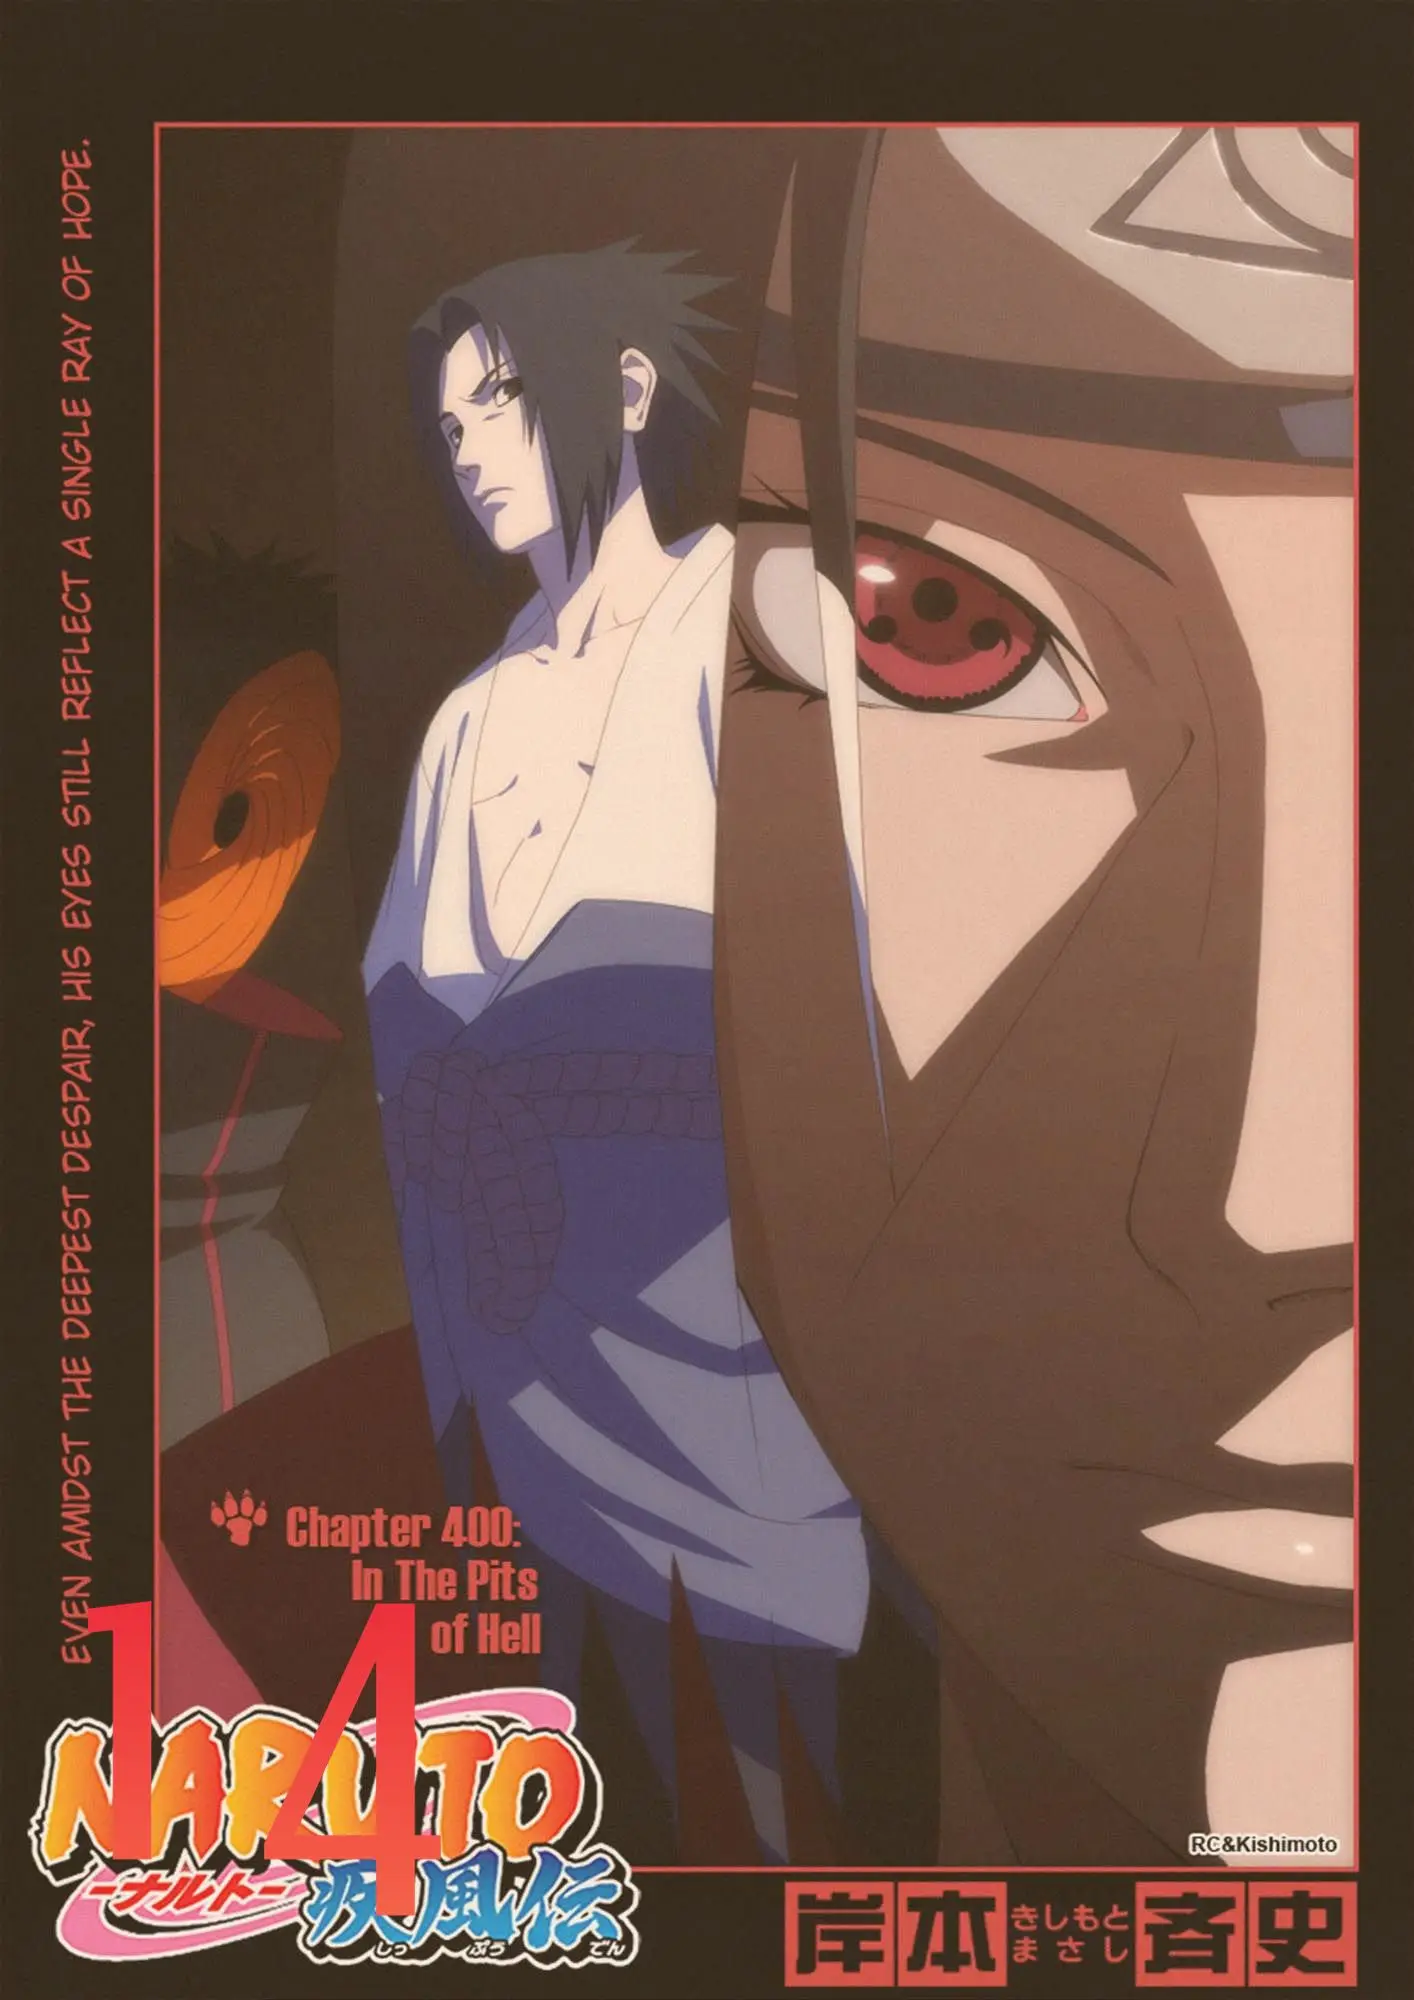 Идеальный JL японского аниме Наруто Итачи Учиха Дома Ретро плакат крафт рисунок ядро наклейки на стену HYRZ01